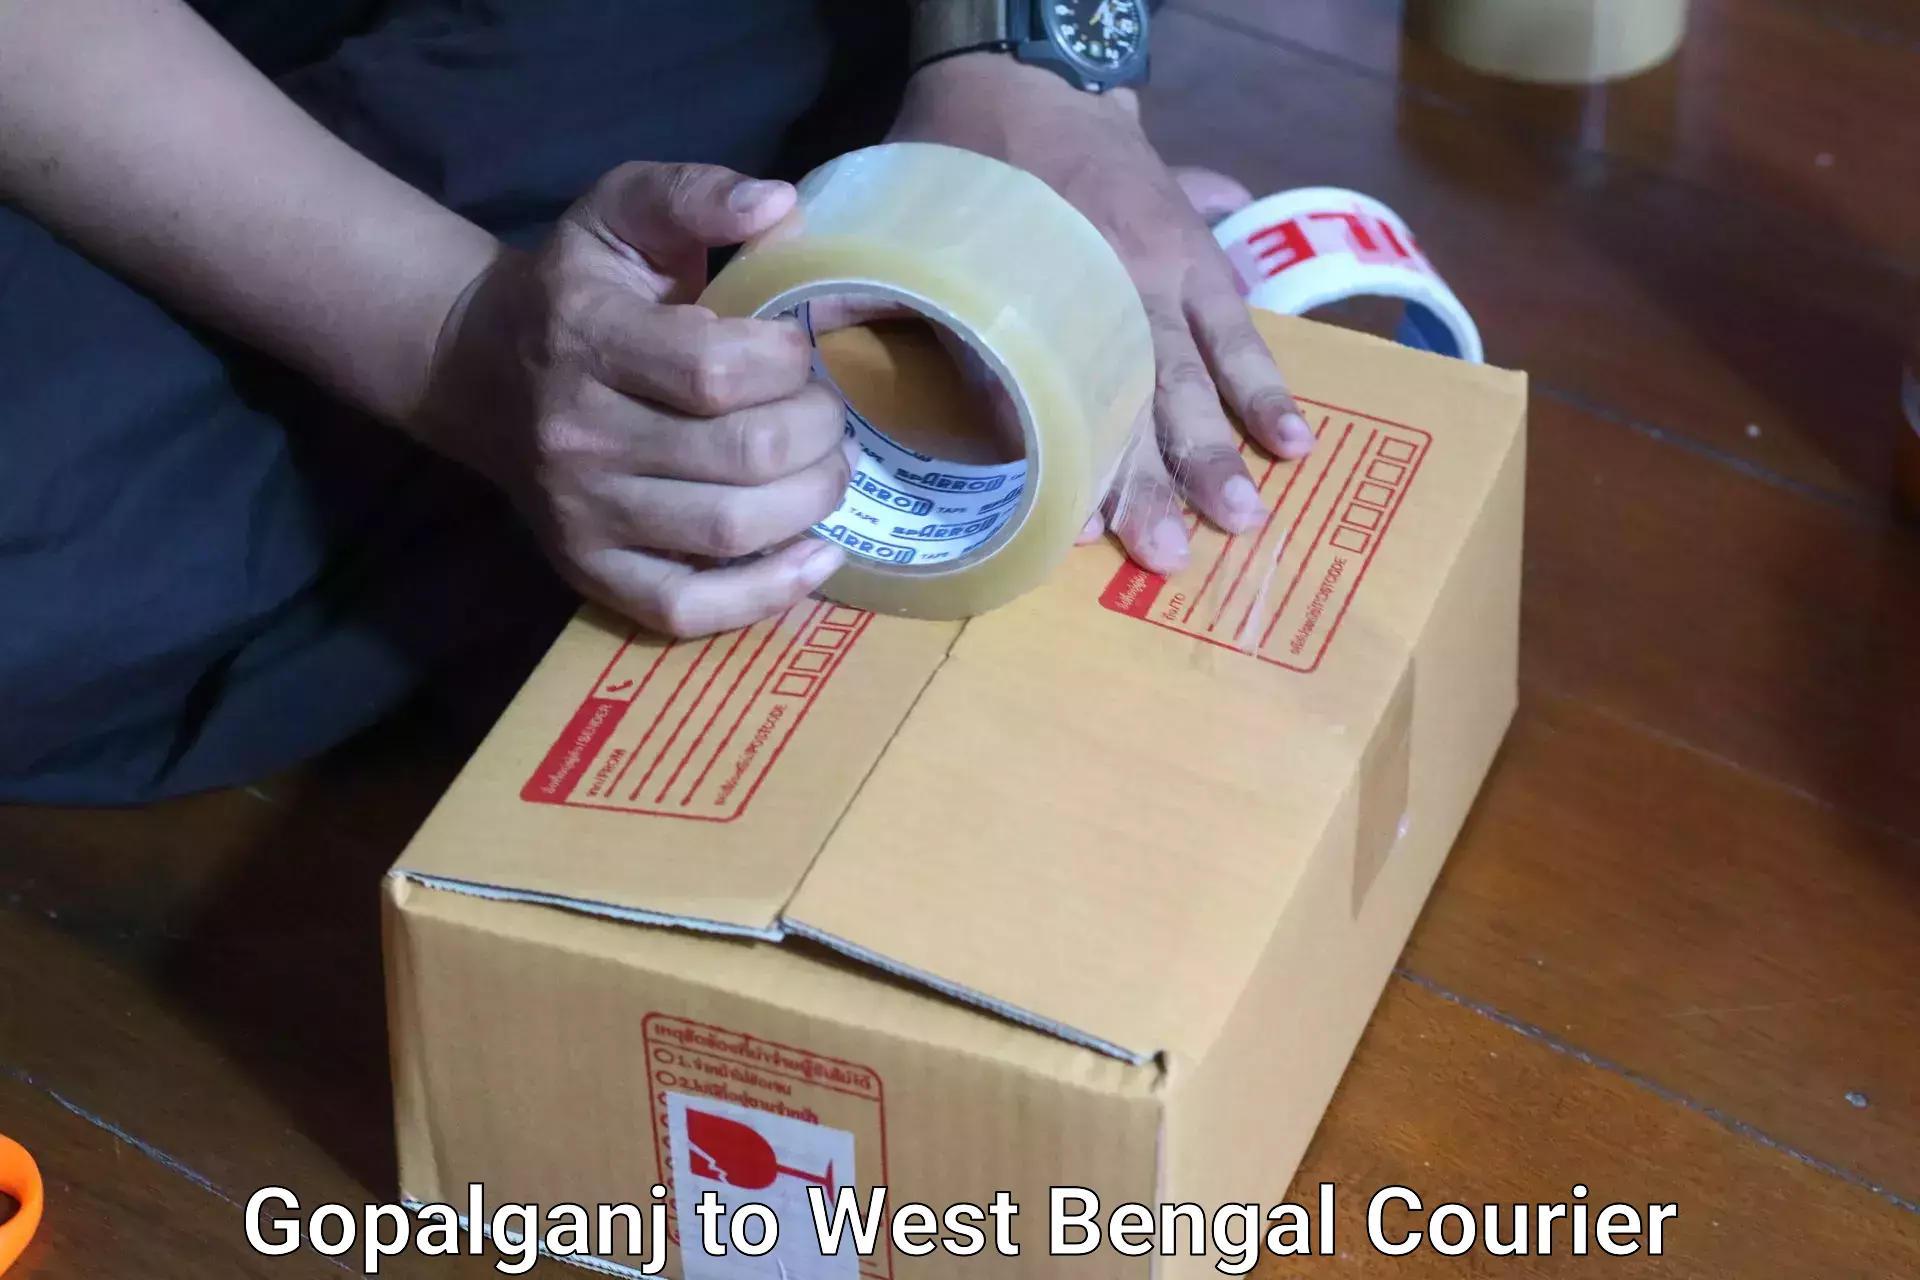 Digital baggage courier Gopalganj to Purba Medinipur